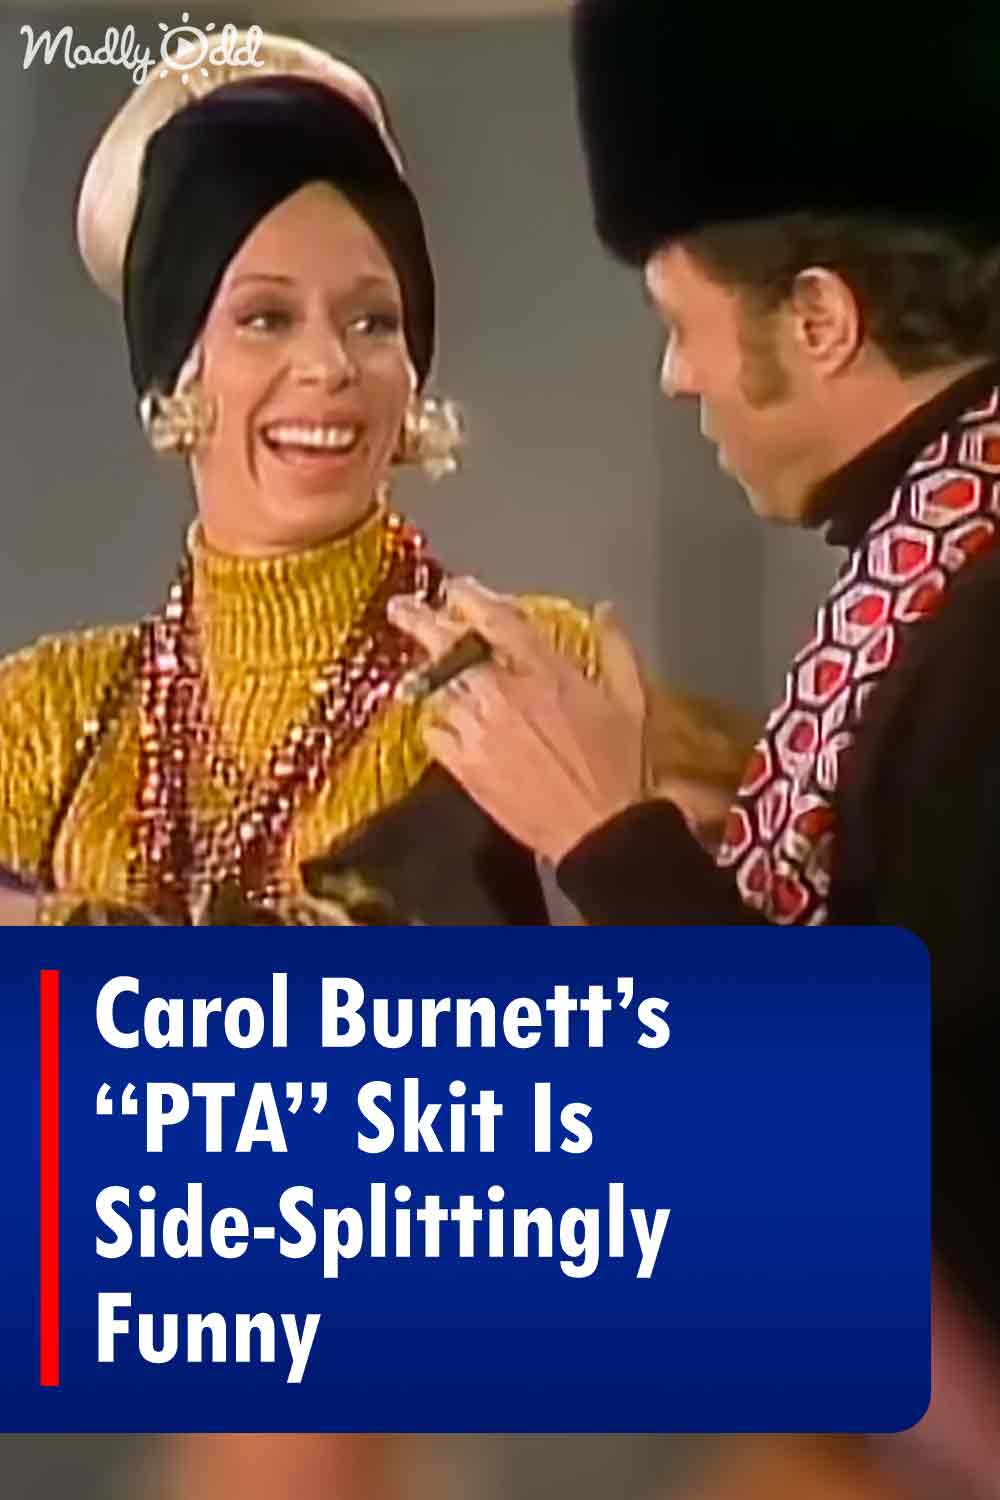 Carol Burnett’s “PTA” Skit Is Side-Splittingly Funny